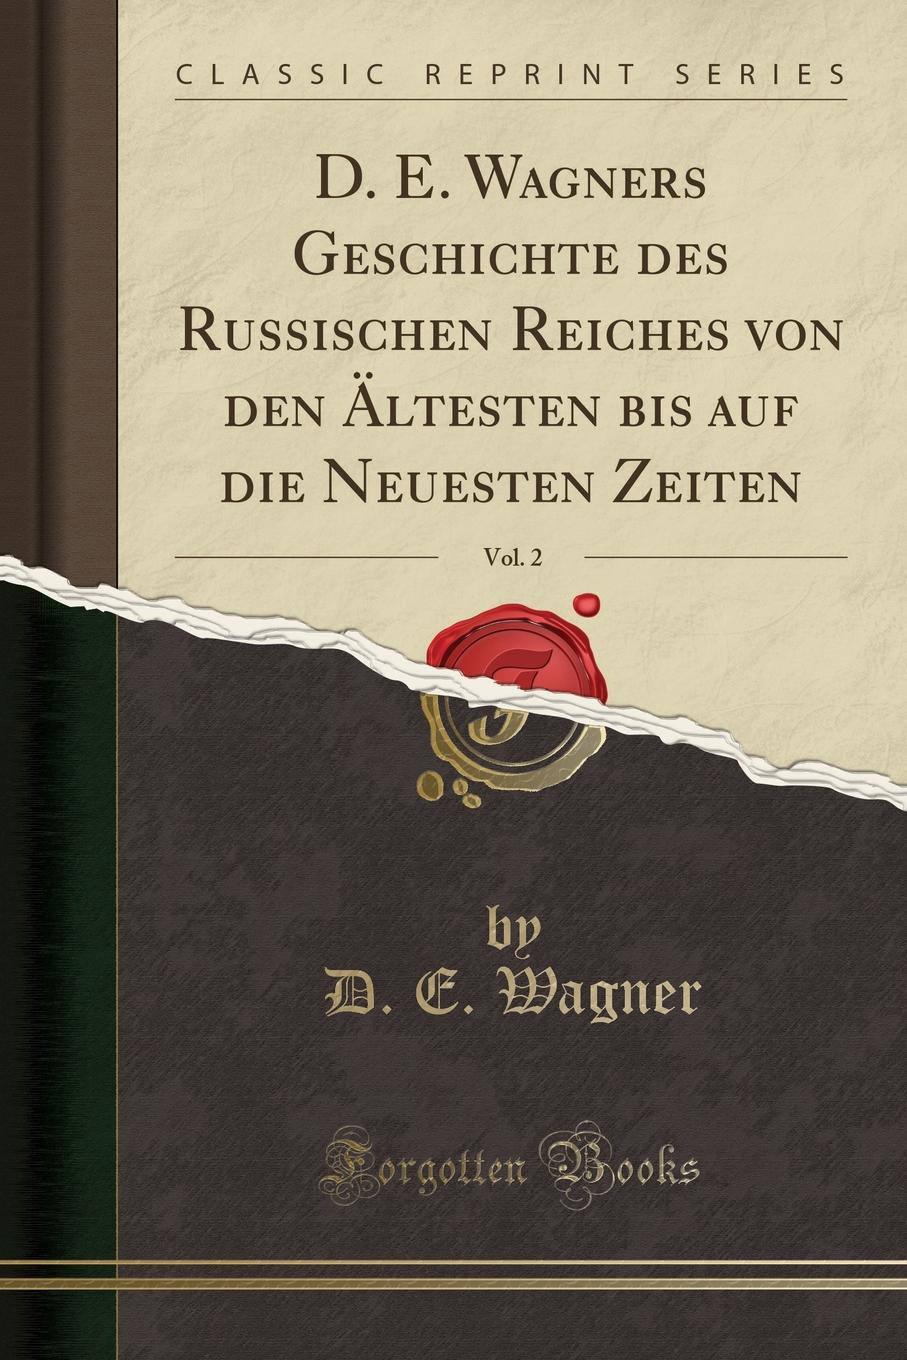 D. E. Wagners Geschichte des Russischen Reiches von den Altesten bis auf die Neuesten Zeiten, Vol. 2 (Classic Reprint)